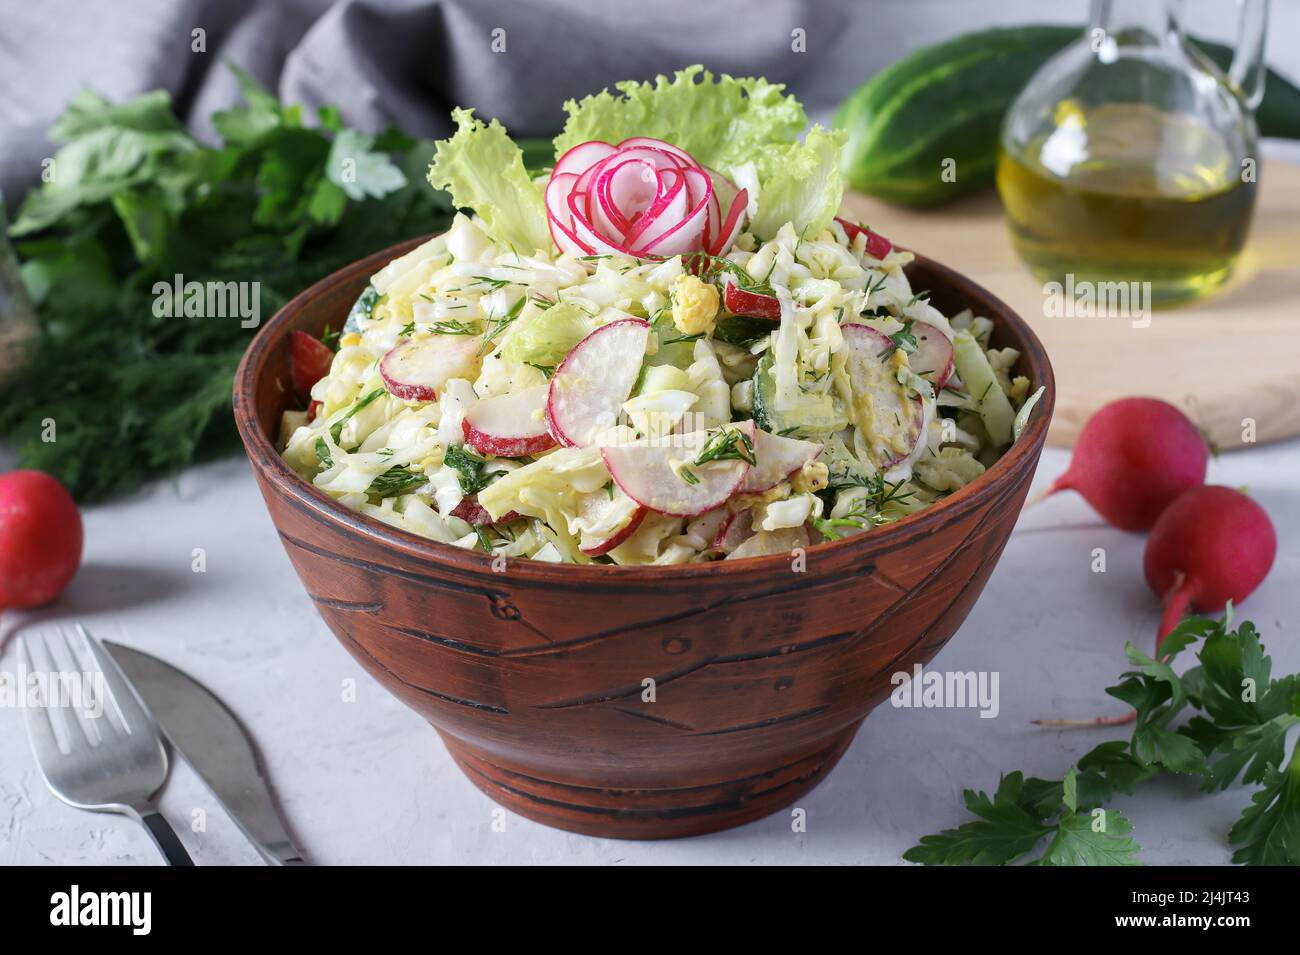 Salat mit Kohl, Gurken, Radieschen, Petersilie und Ei, gewürzt mit Olivenöl in einer braunen Schüssel auf grauem Grund Stockfoto